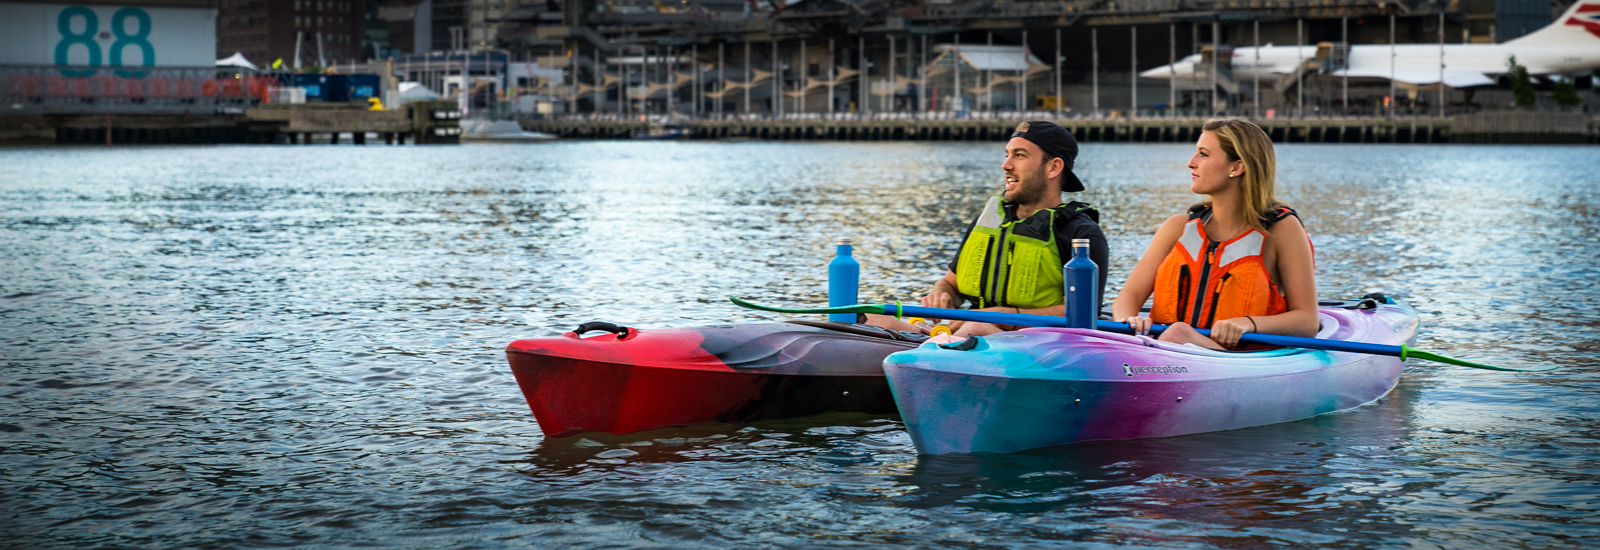 Couple in JoyRide kayaks